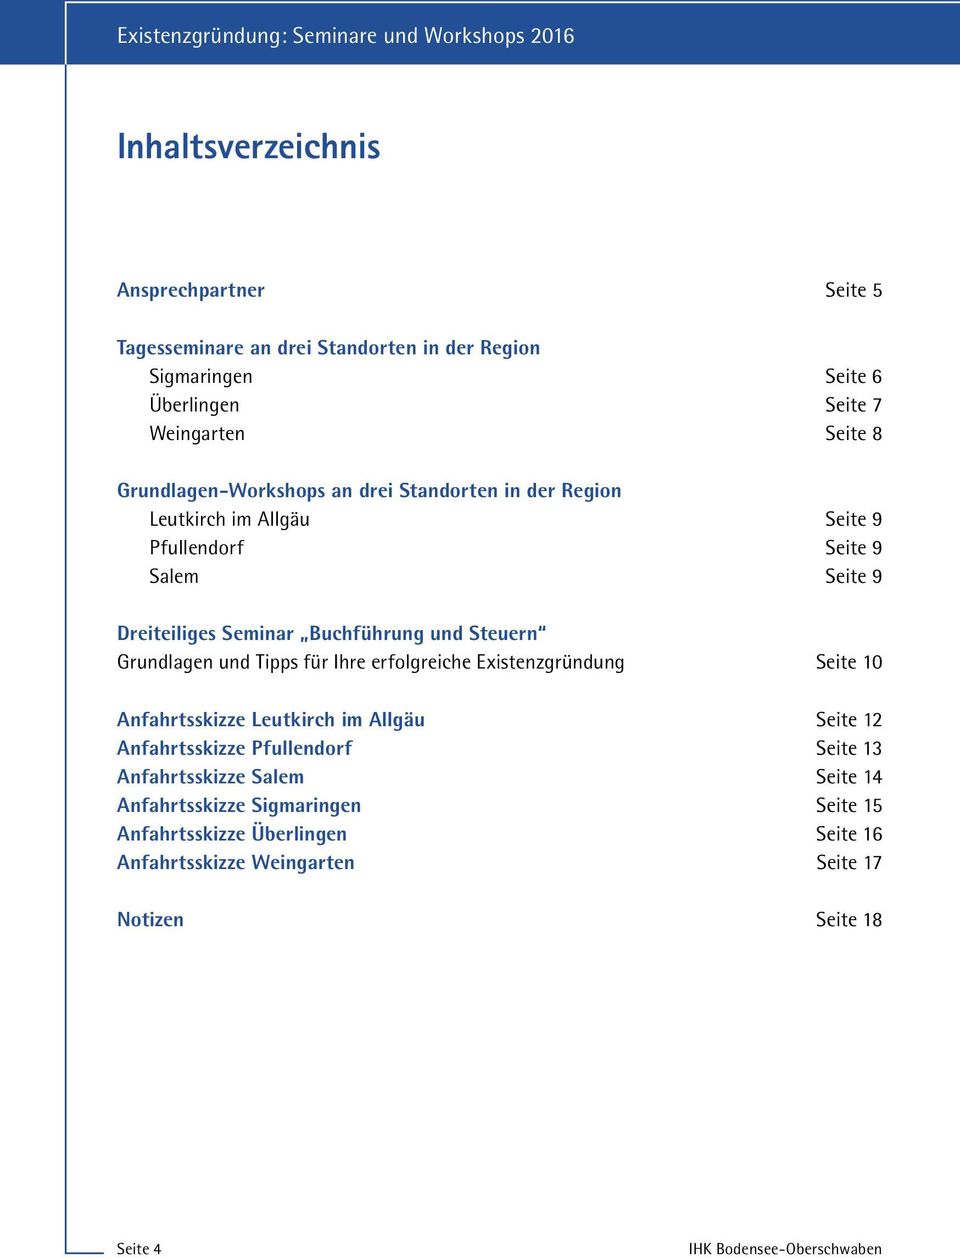 Grundlagen und Tipps für Ihre erfolgreiche Existenzgründung Seite 10 Anfahrtsskizze Leutkirch im Allgäu Seite 12 Anfahrtsskizze Pfullendorf Seite 13